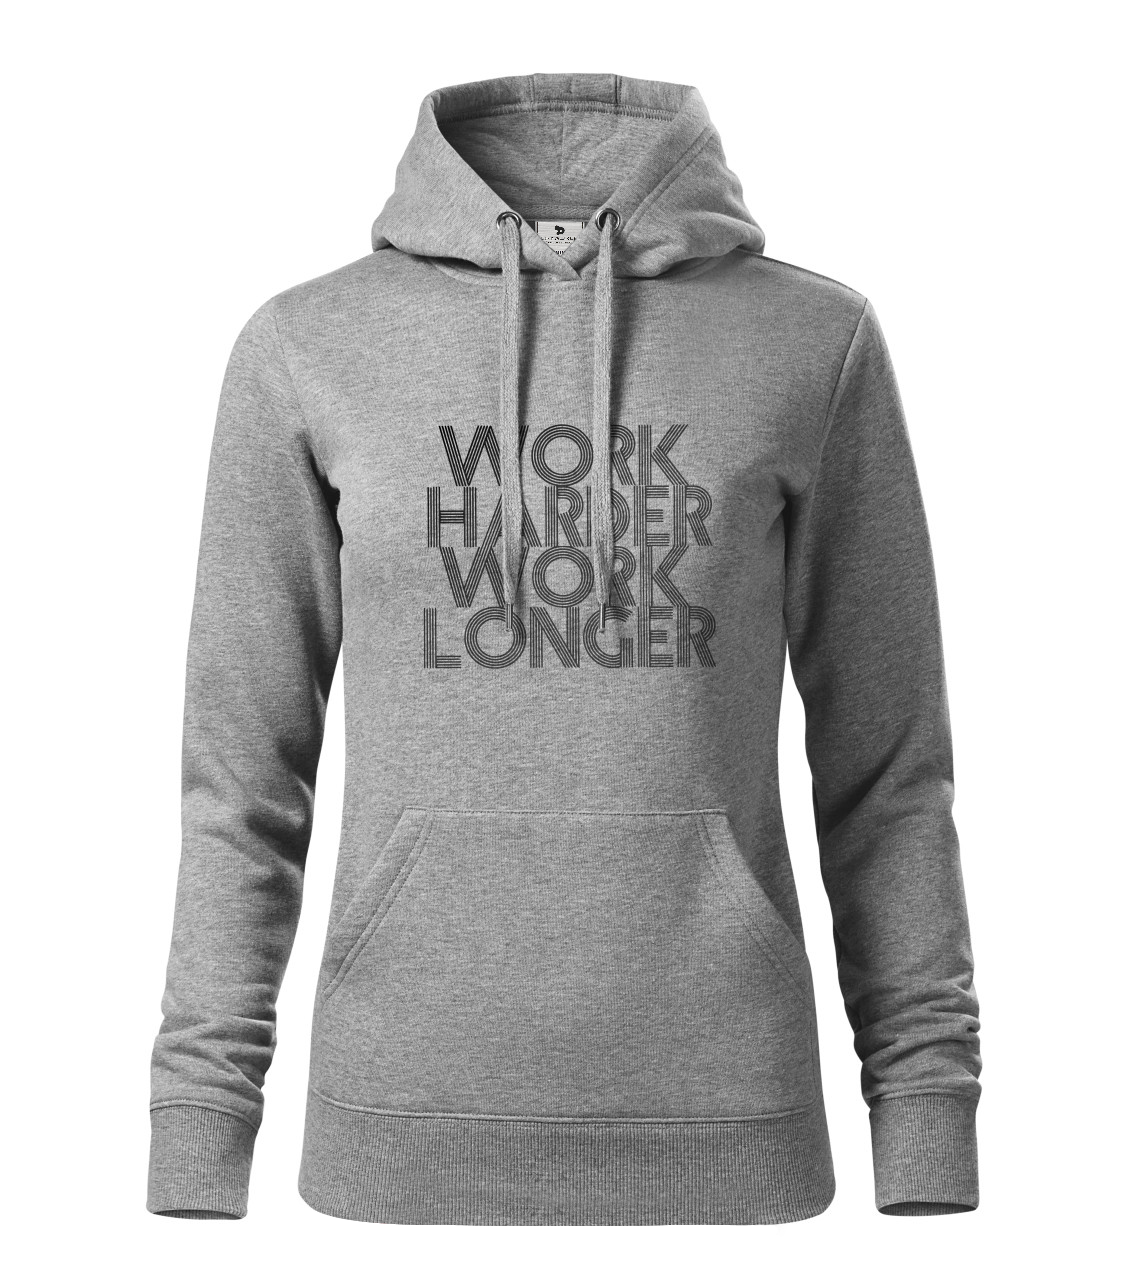 Work Harder Work Longer Pullover- Women's